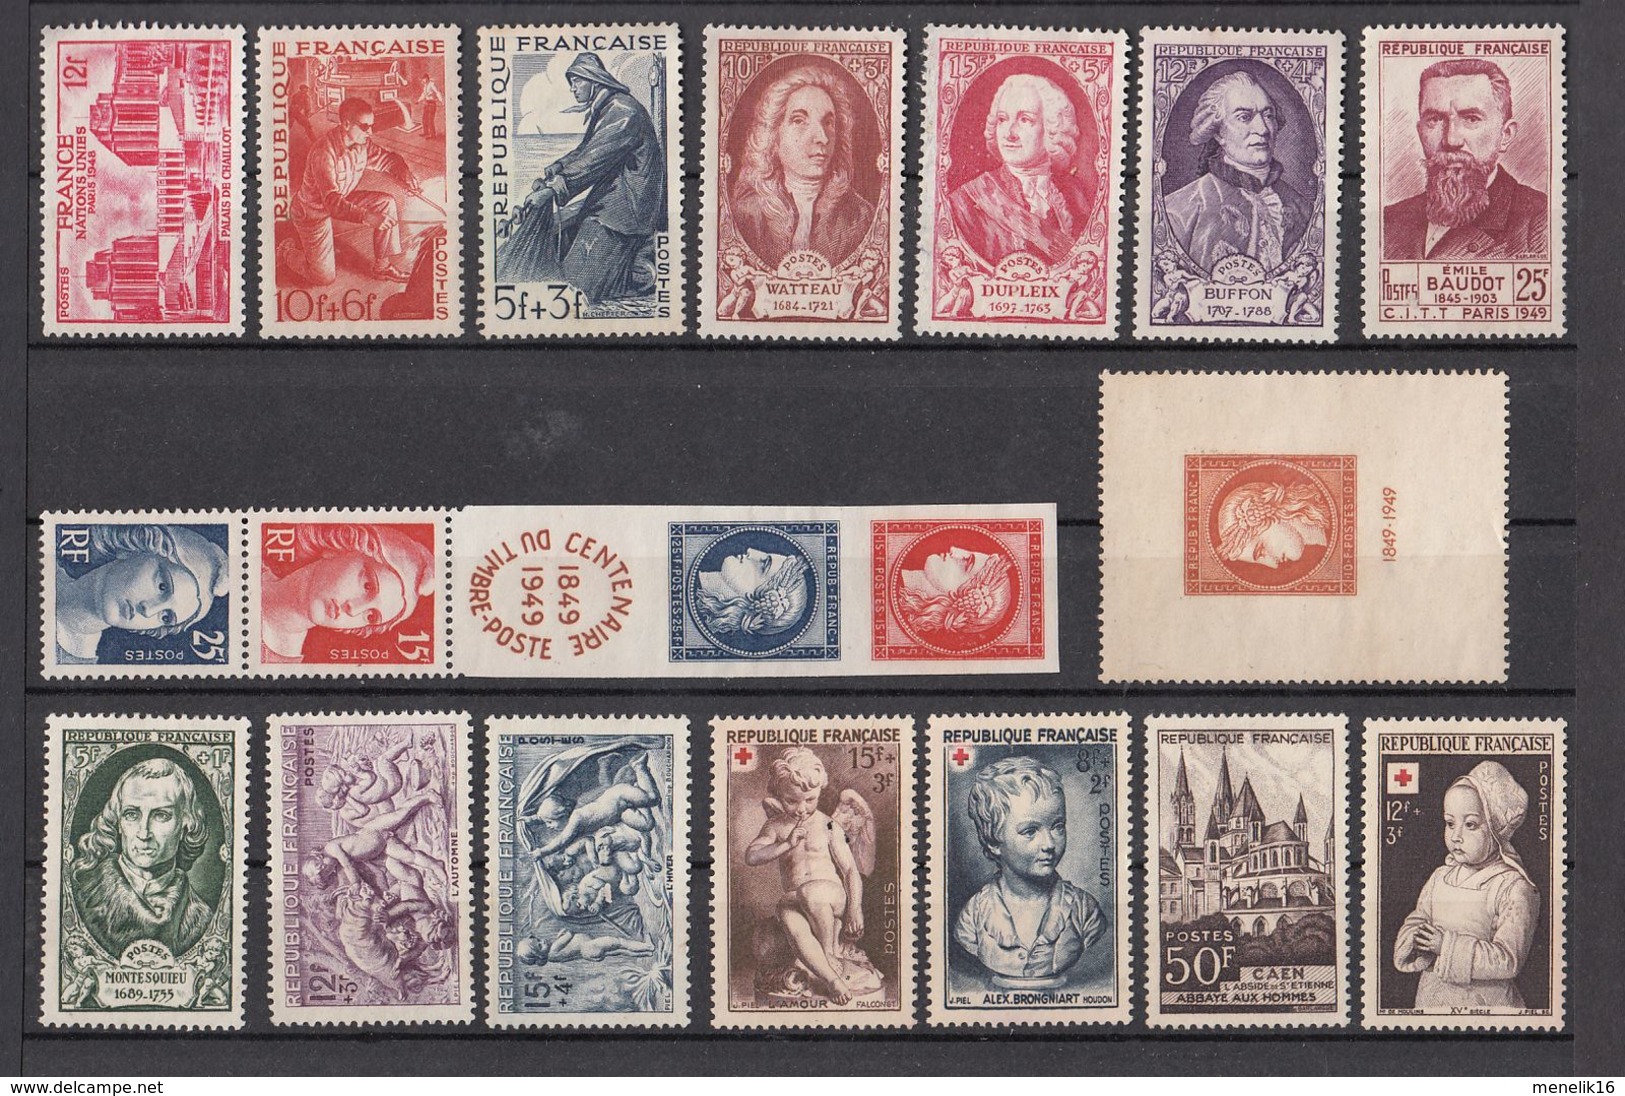 Ghle - Lot timbres France - Neufs sans gomme ou oblitérés - Classiques et timbres jusque 1959 - lot sympa